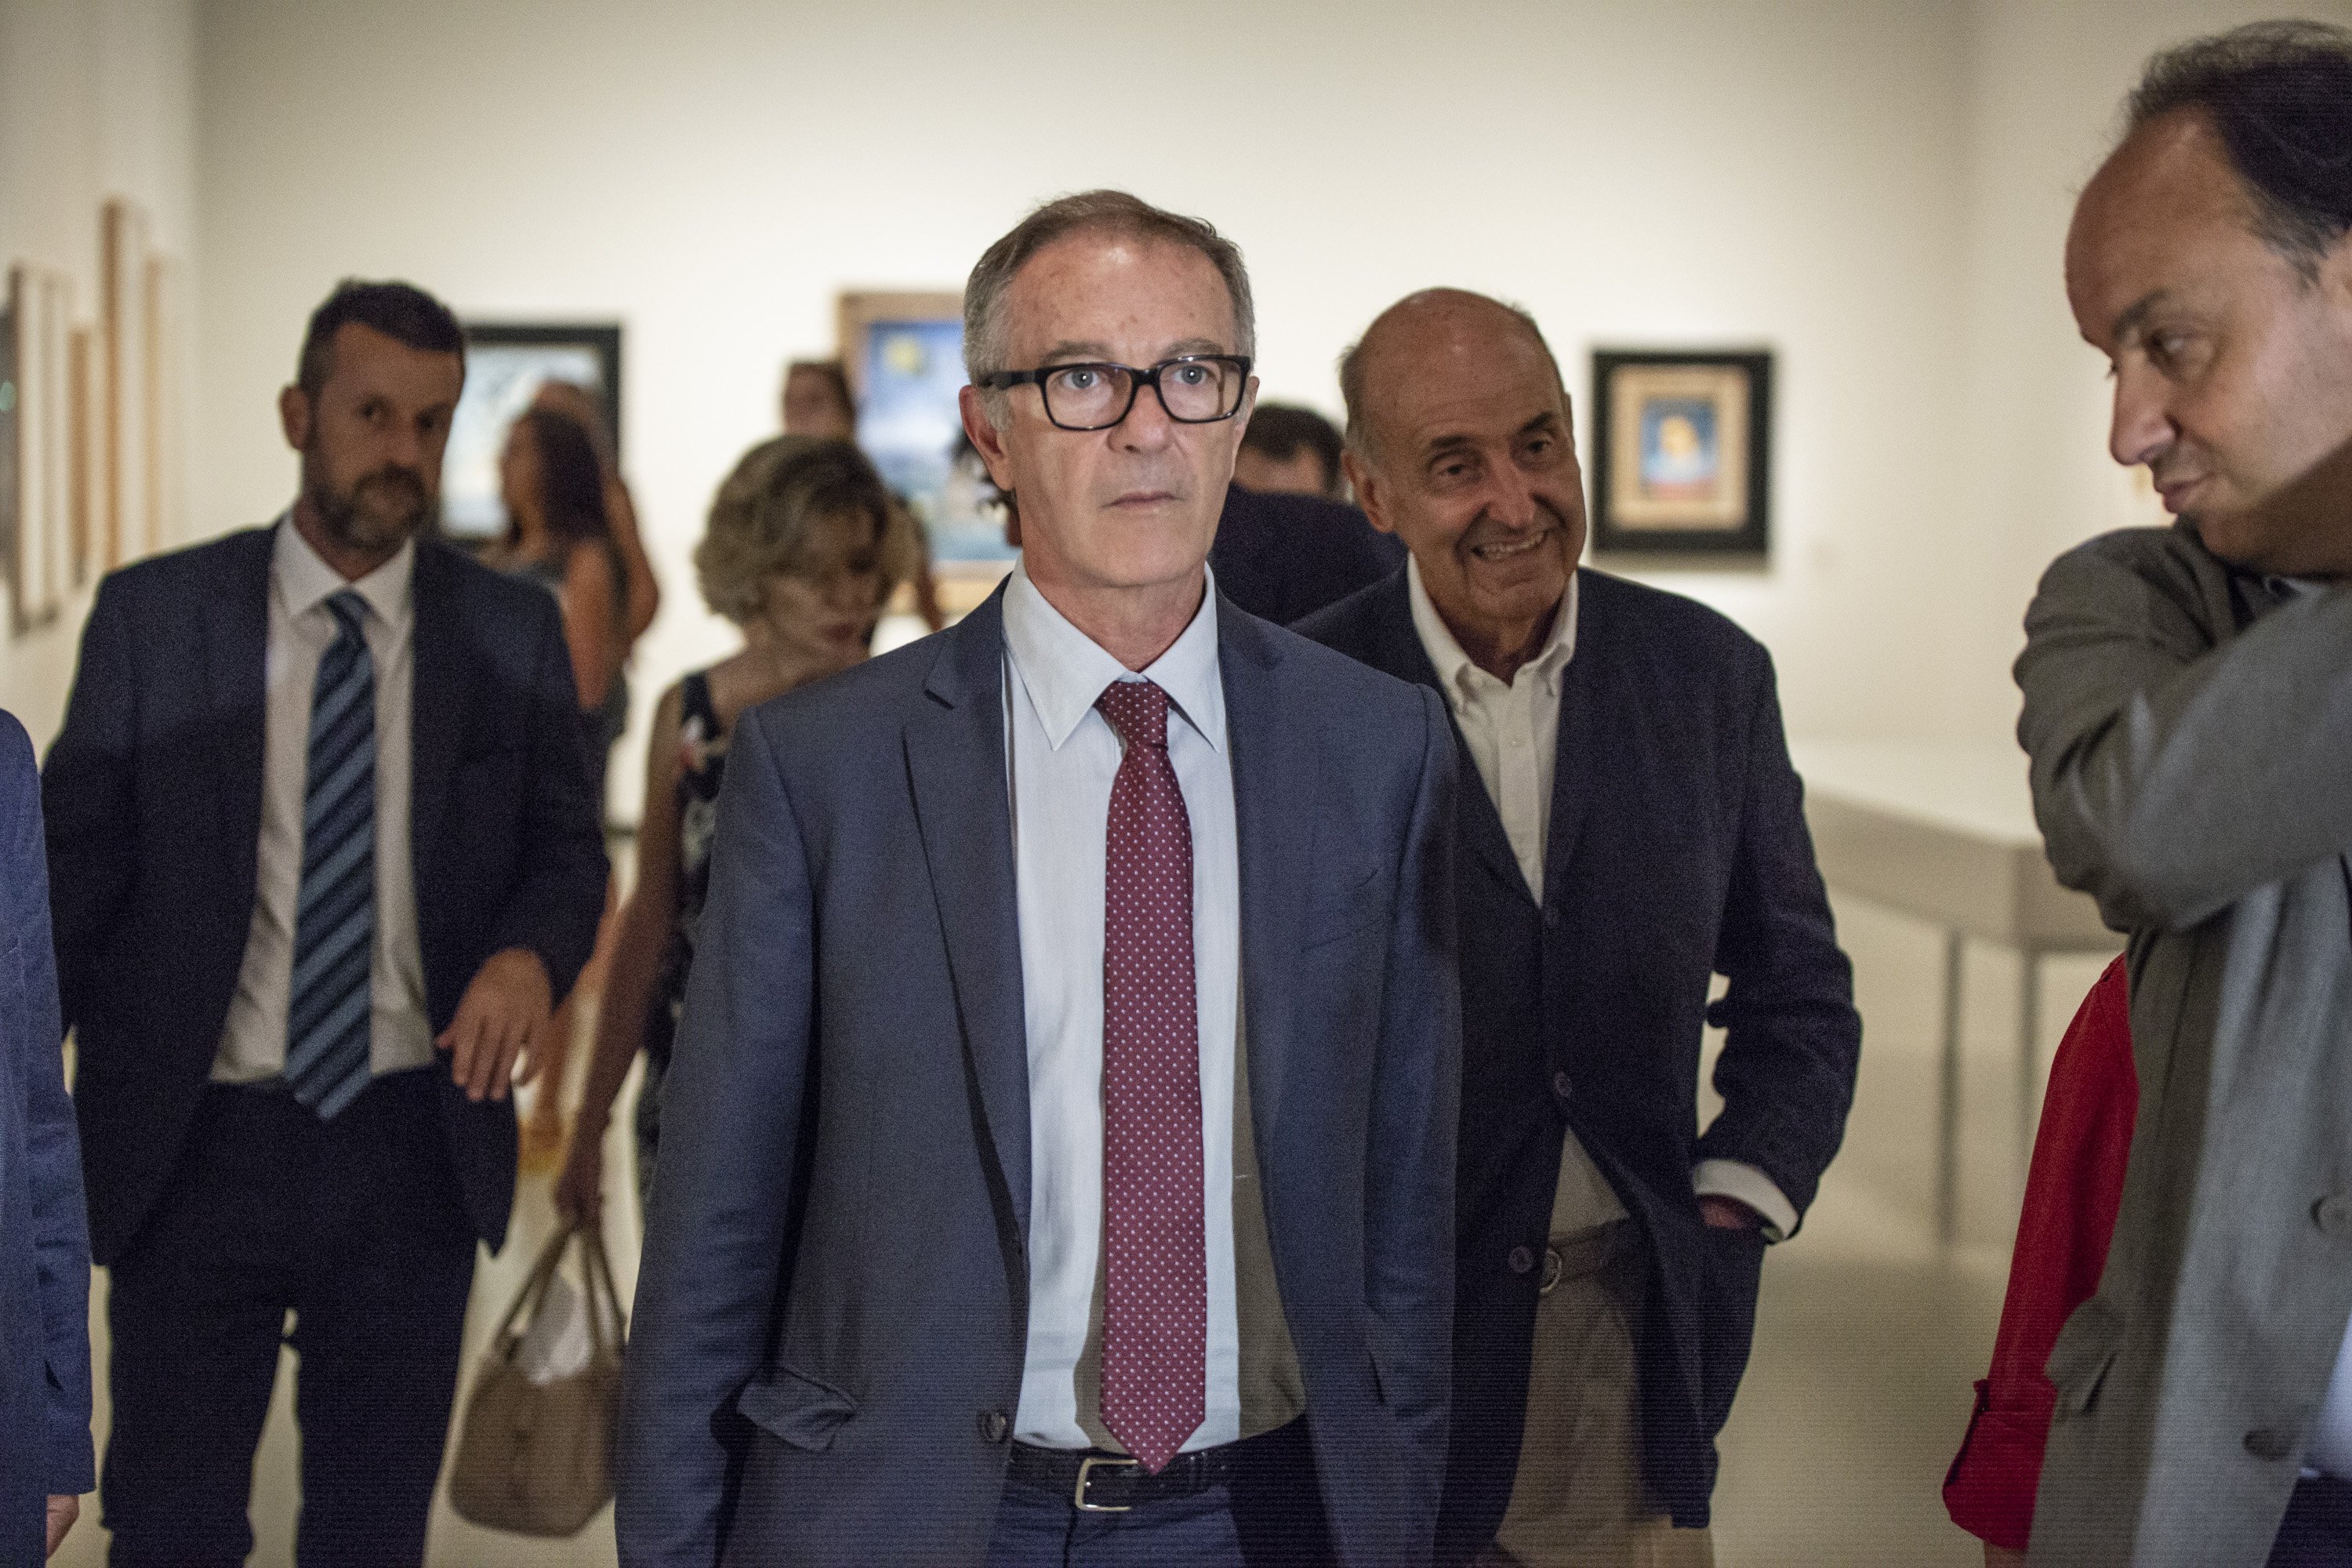 El ministre de Cultura, sobre Valtònyc: "Els artistes tenen un límit, que són les lleis"